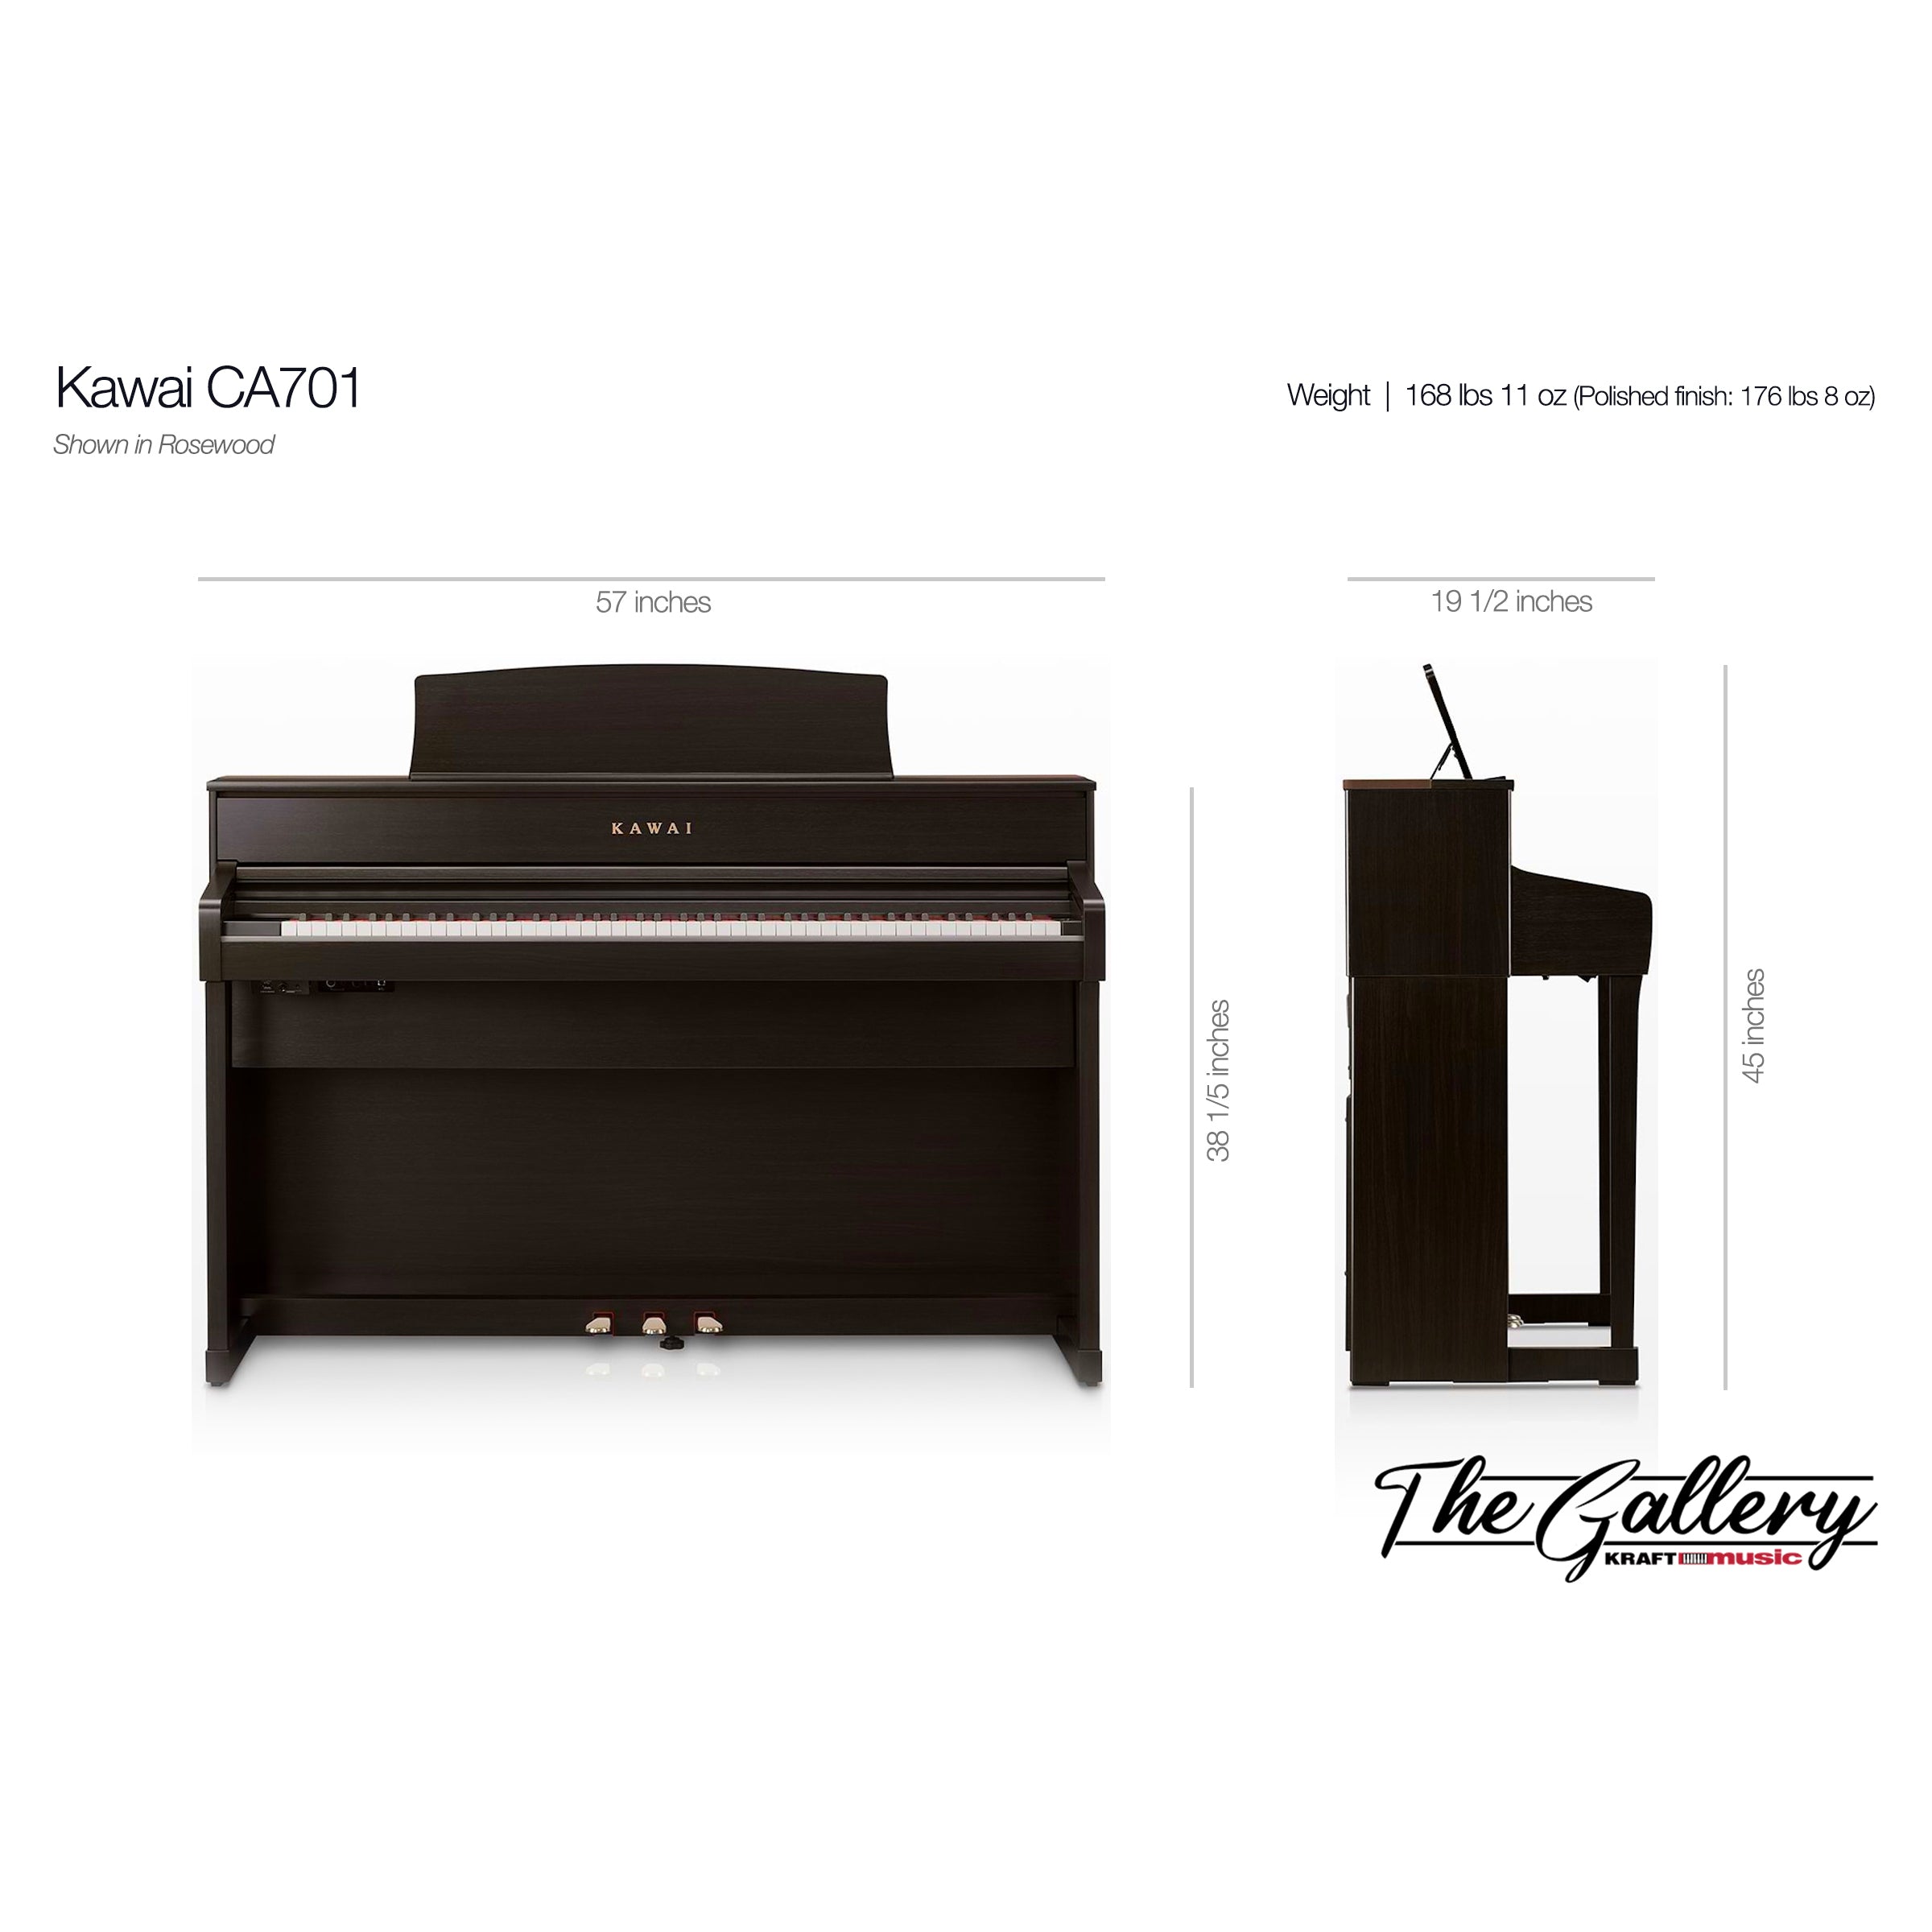 Kawai CA701 Concert Artist Digital Piano - Dimensions